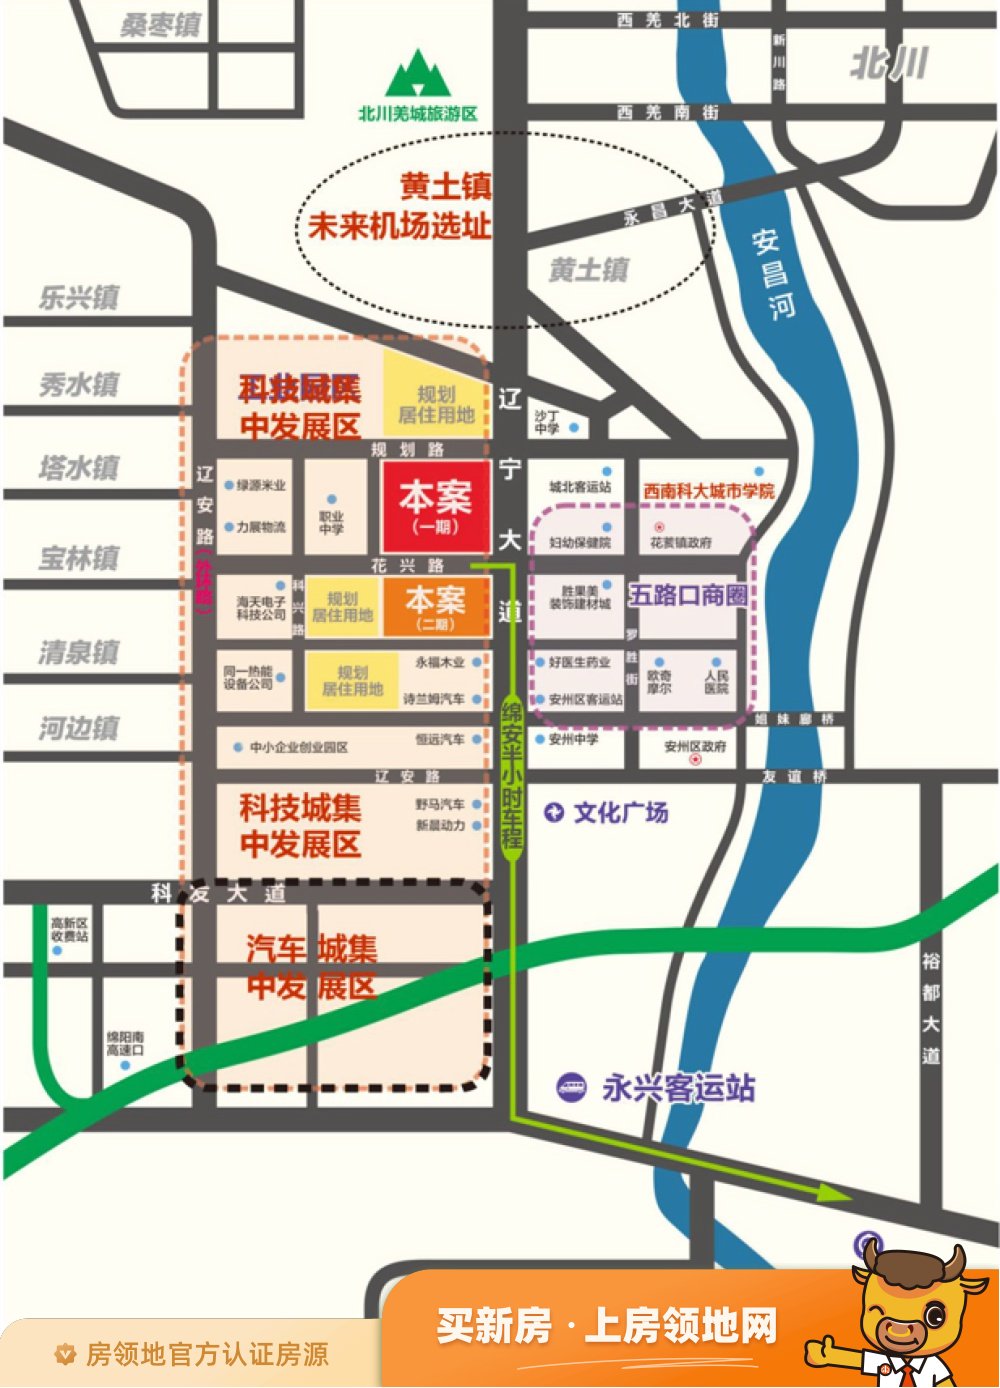 中宏建材博览中心商铺位置交通图1